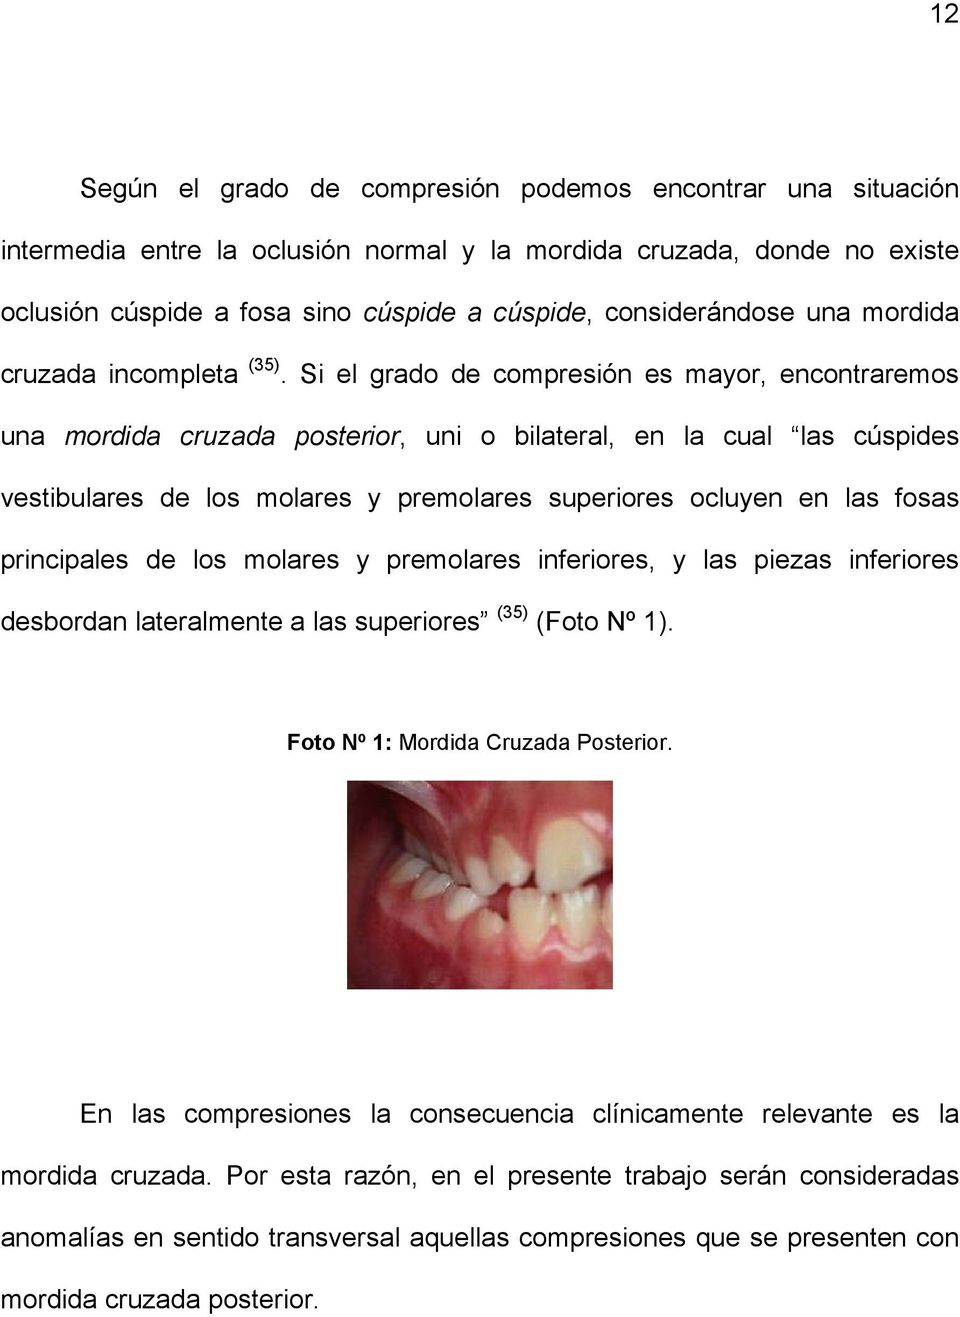 Si el grado de compresión es mayor, encontraremos una mordida cruzada posterior, uni o bilateral, en la cual las cúspides vestibulares de los molares y premolares superiores ocluyen en las fosas